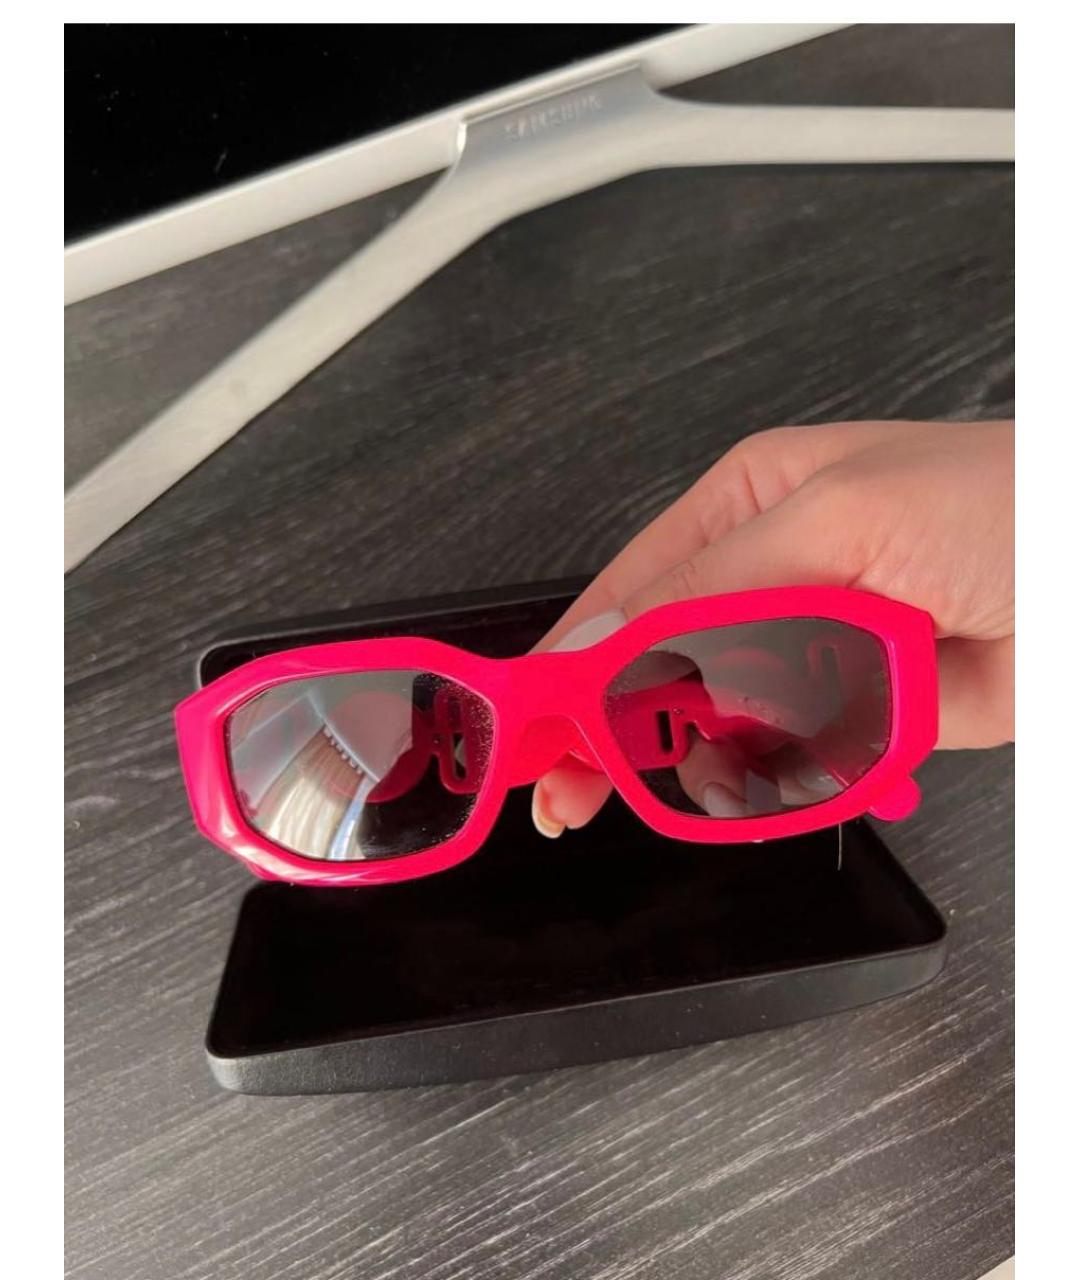 VERSACE Розовые пластиковые солнцезащитные очки, фото 2